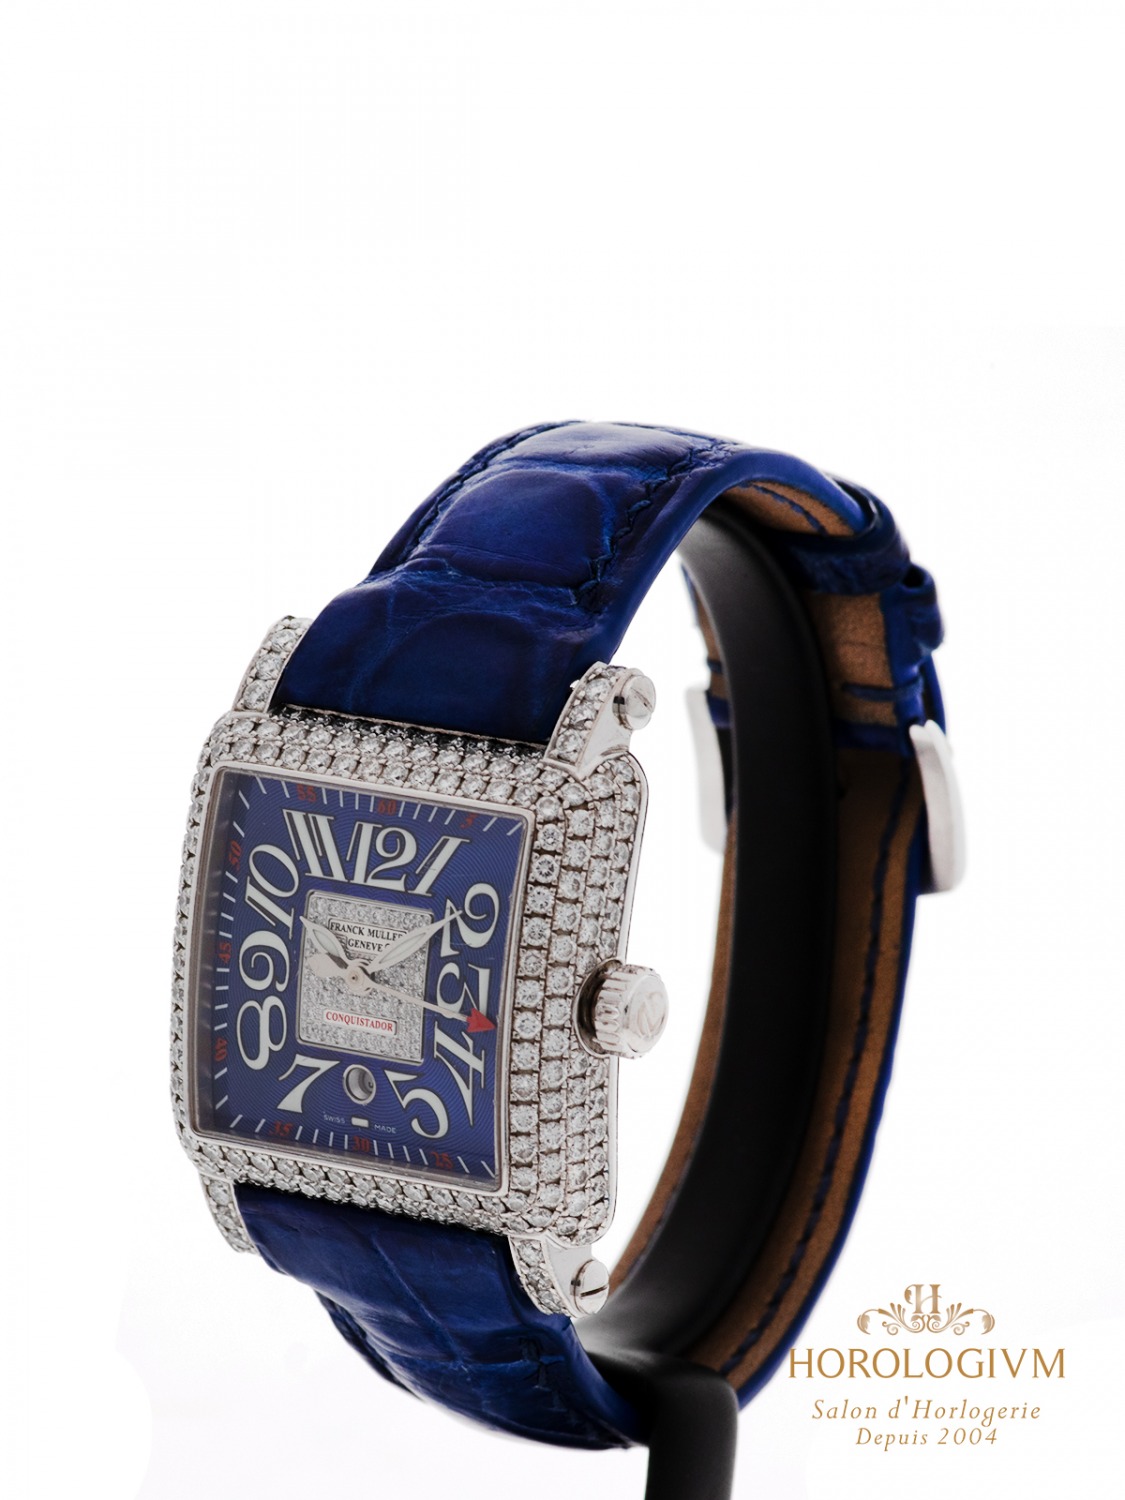 Franck Muller Conquistador Cortez Ref. 9000 L SC D 1P watch, silver